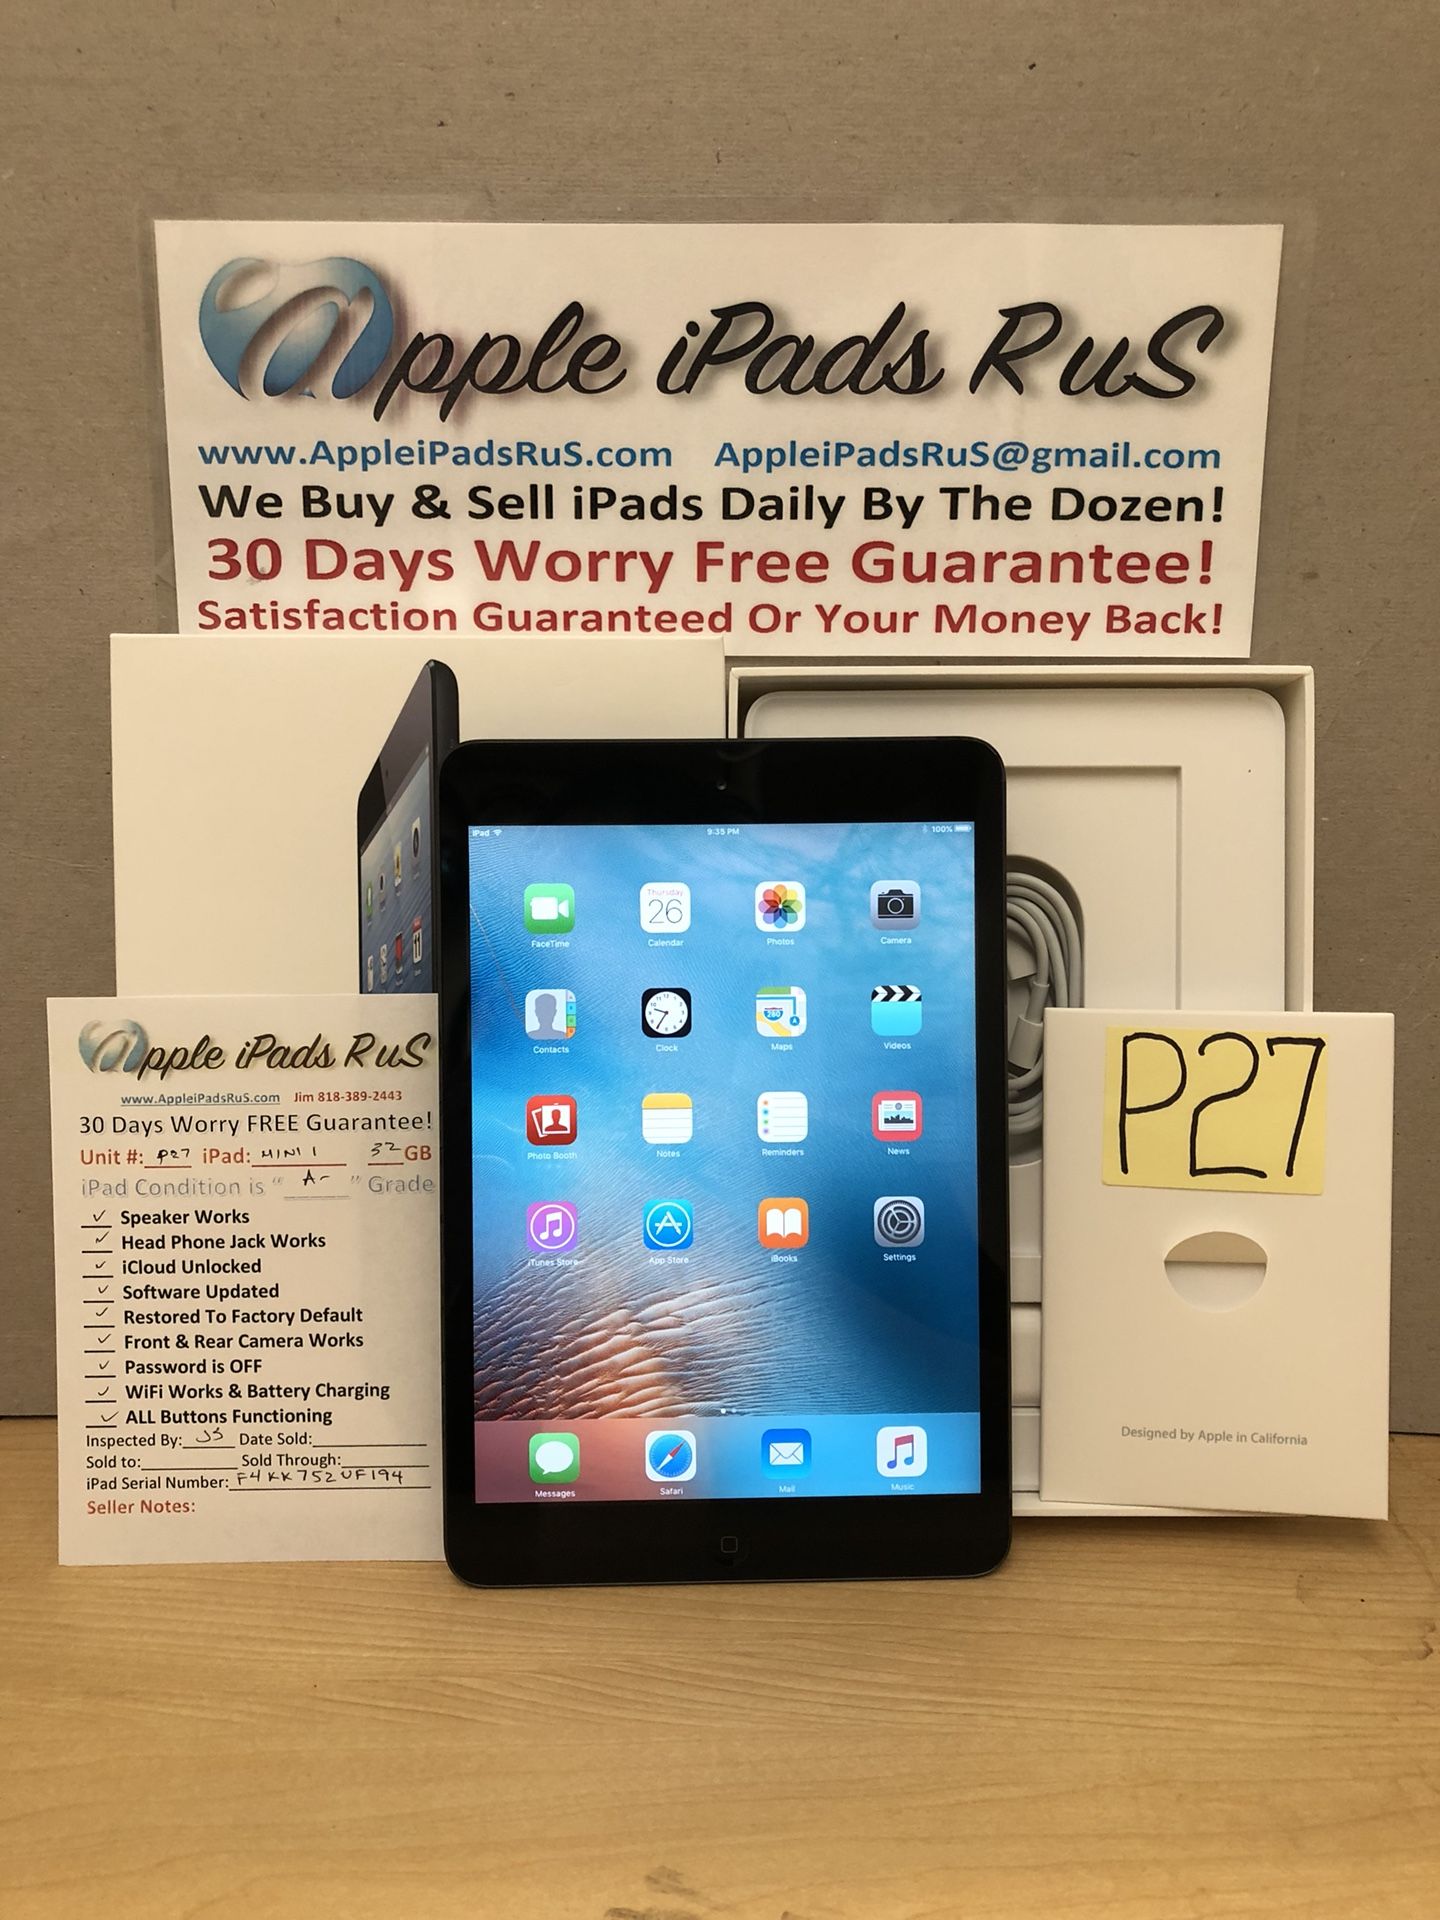 P27 - iPad mini 1 16GB